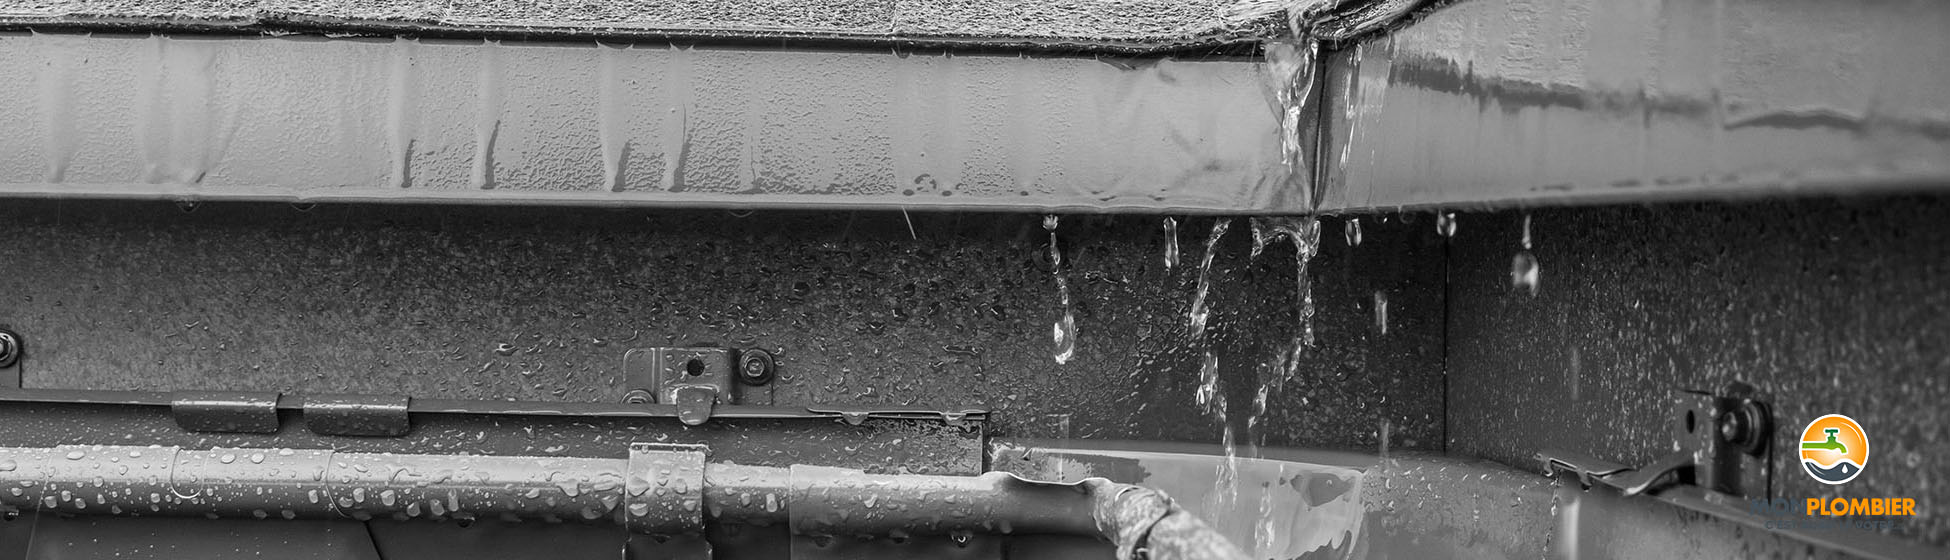 Installation recuperateur eau de pluie sur gouttiere